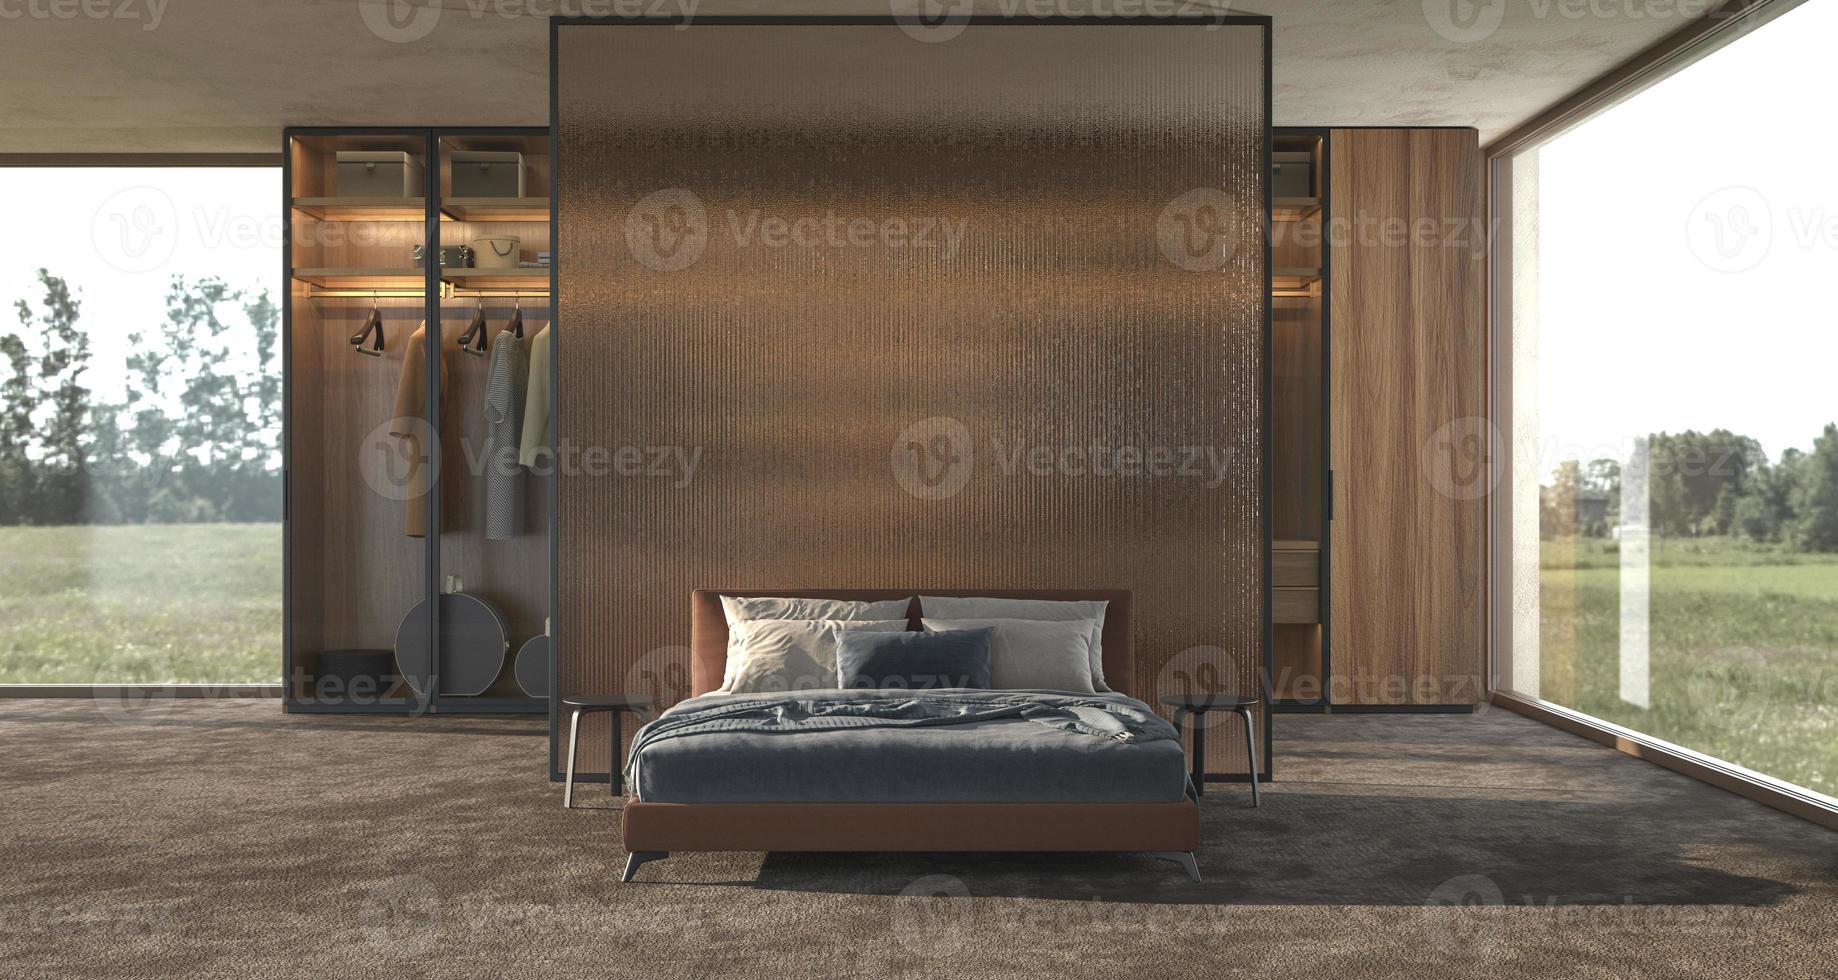 Diseño de interiores de dormitorio moderno de lujo con mampara de vidrio decorativo y ventanas panorámicas con vista de campo foto